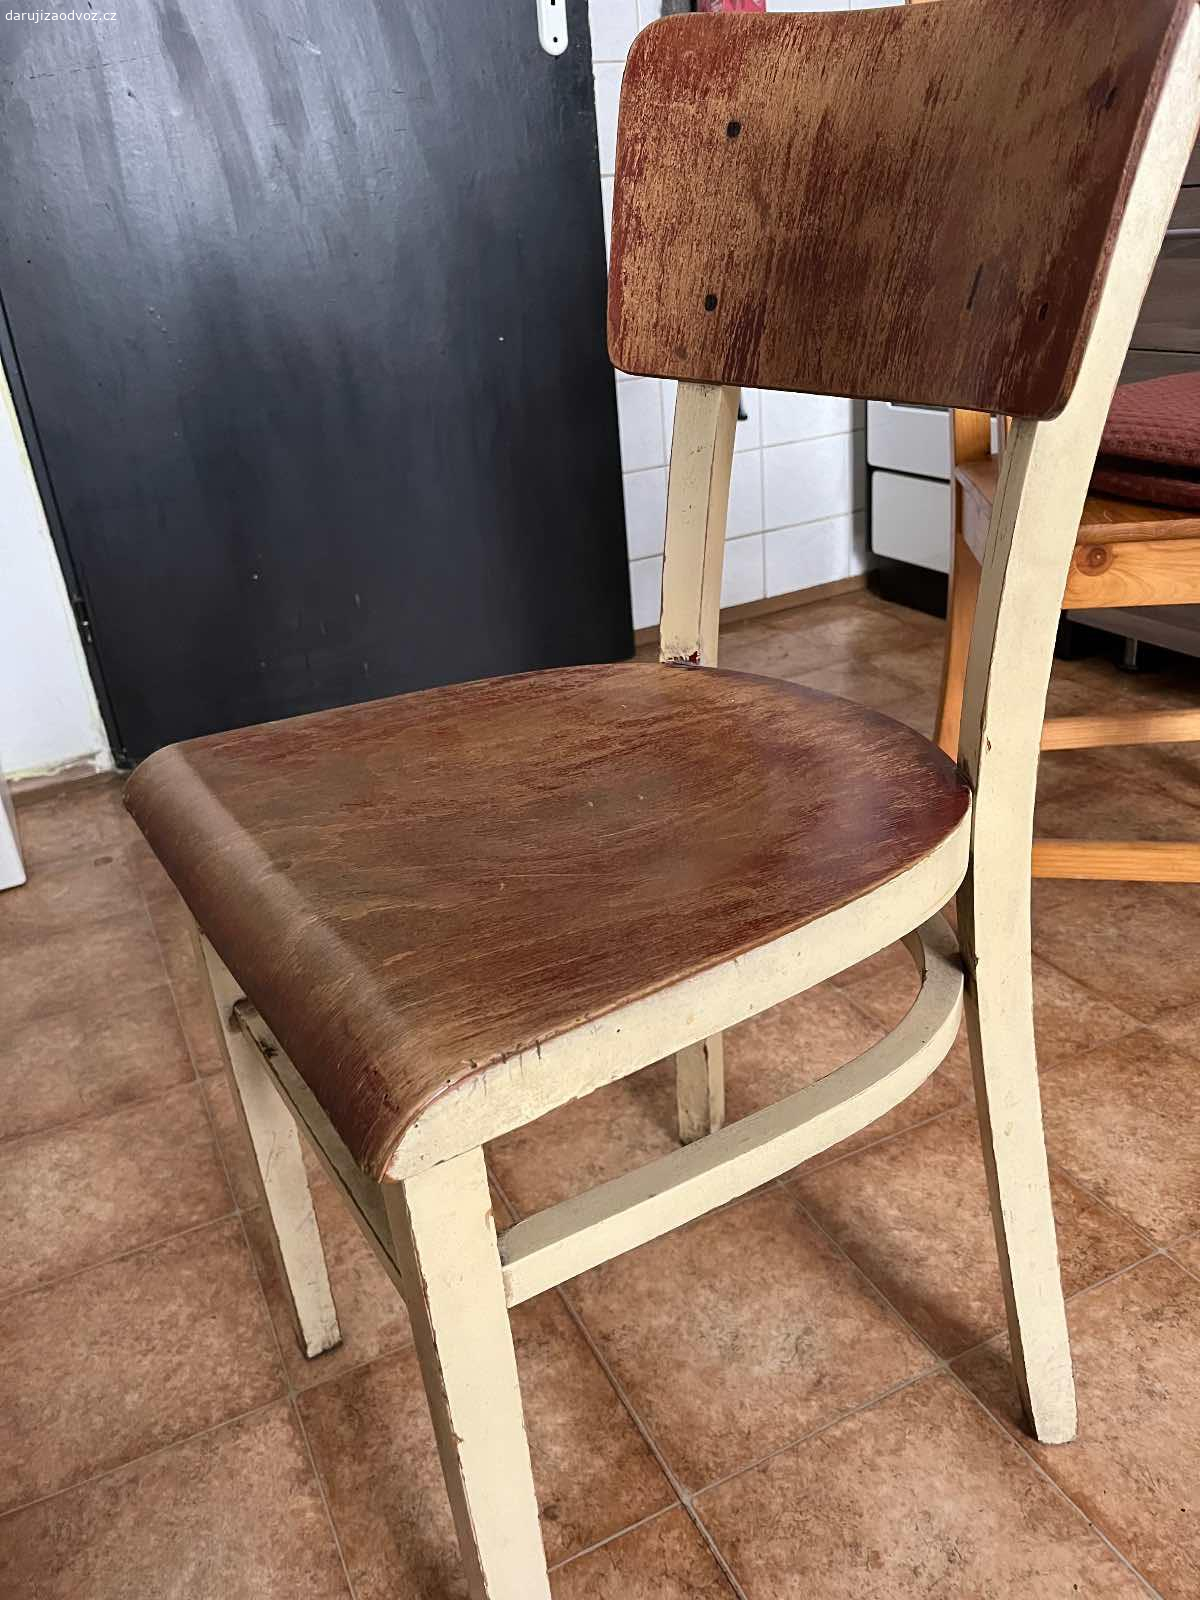 Dřevěná židle k renovaci. Starý, poctivý kousek